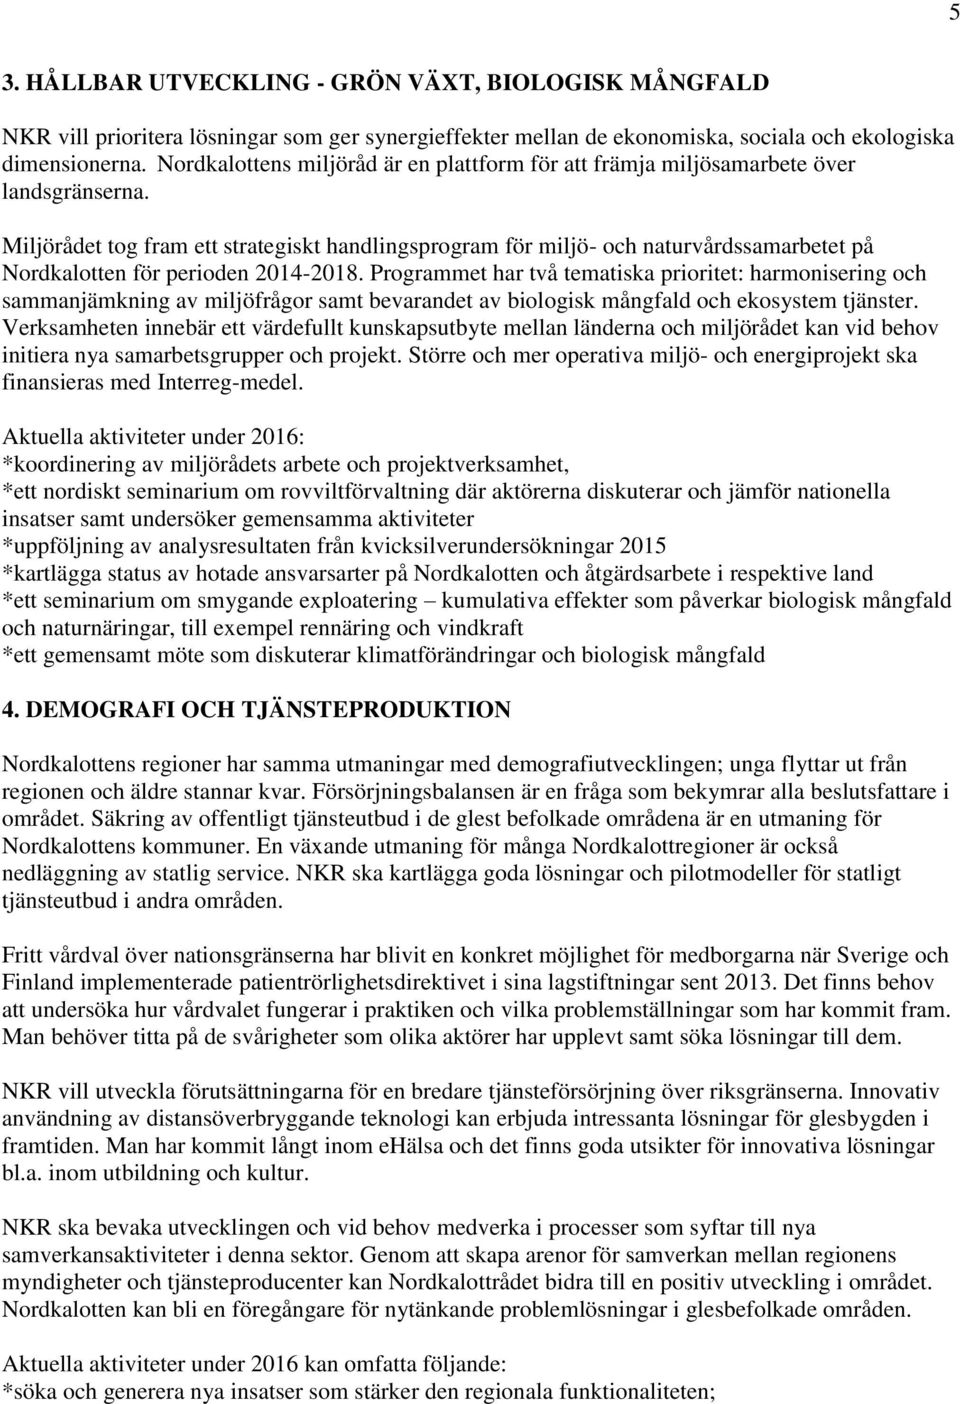 Miljörådet tog fram ett strategiskt handlingsprogram för miljö- och naturvårdssamarbetet på Nordkalotten för perioden 2014-2018.